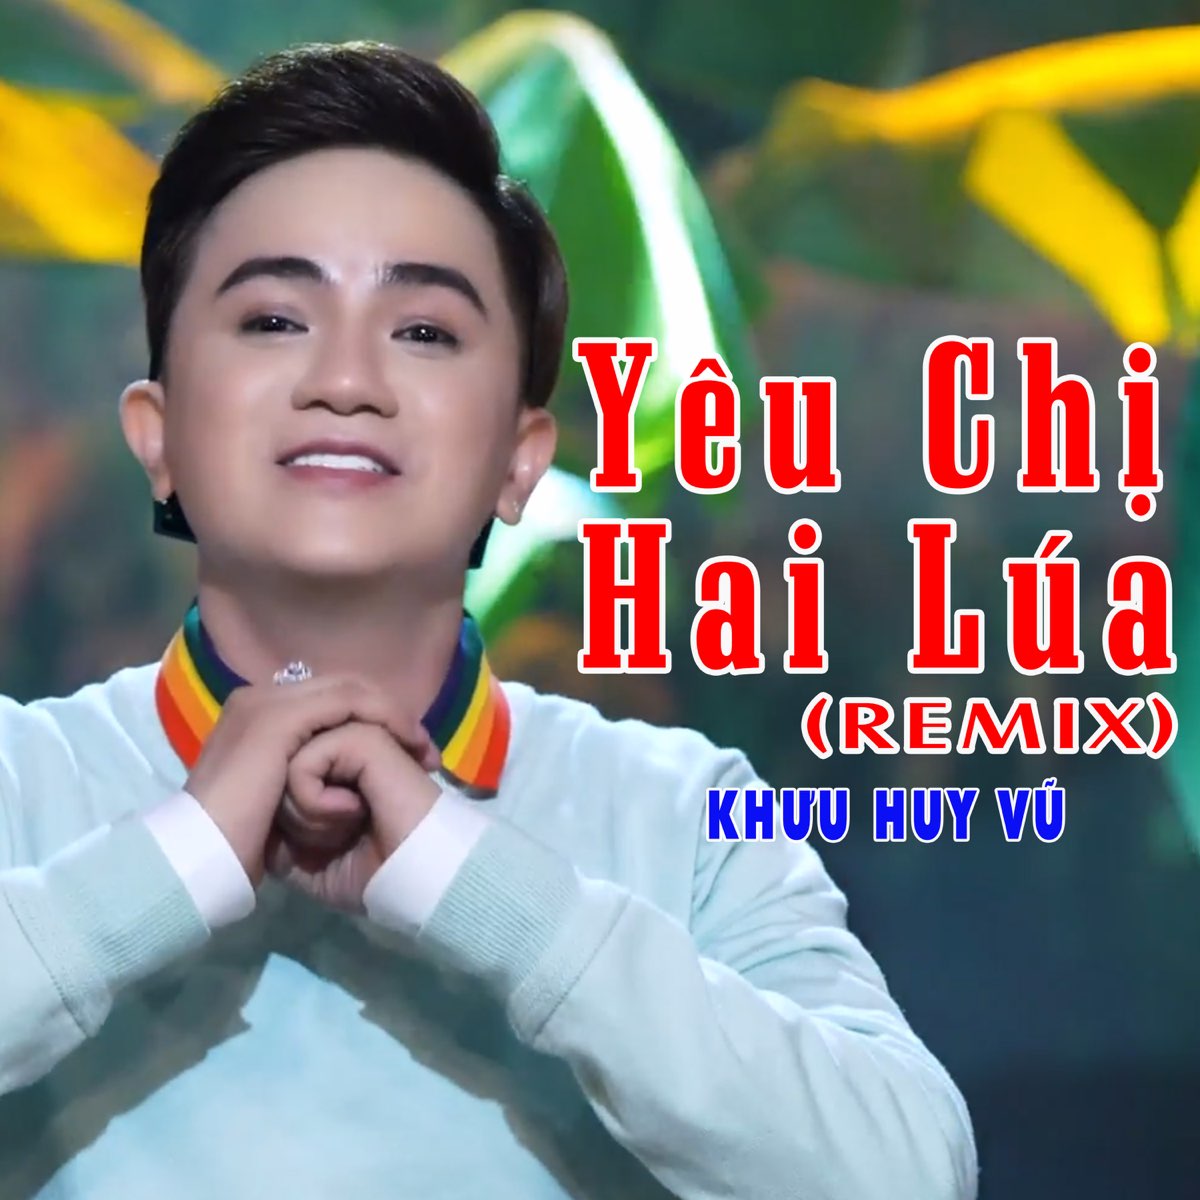 ‎Yêu Chị Hai Lúa (Remix) - Single by Khưu Huy Vũ on Apple ...